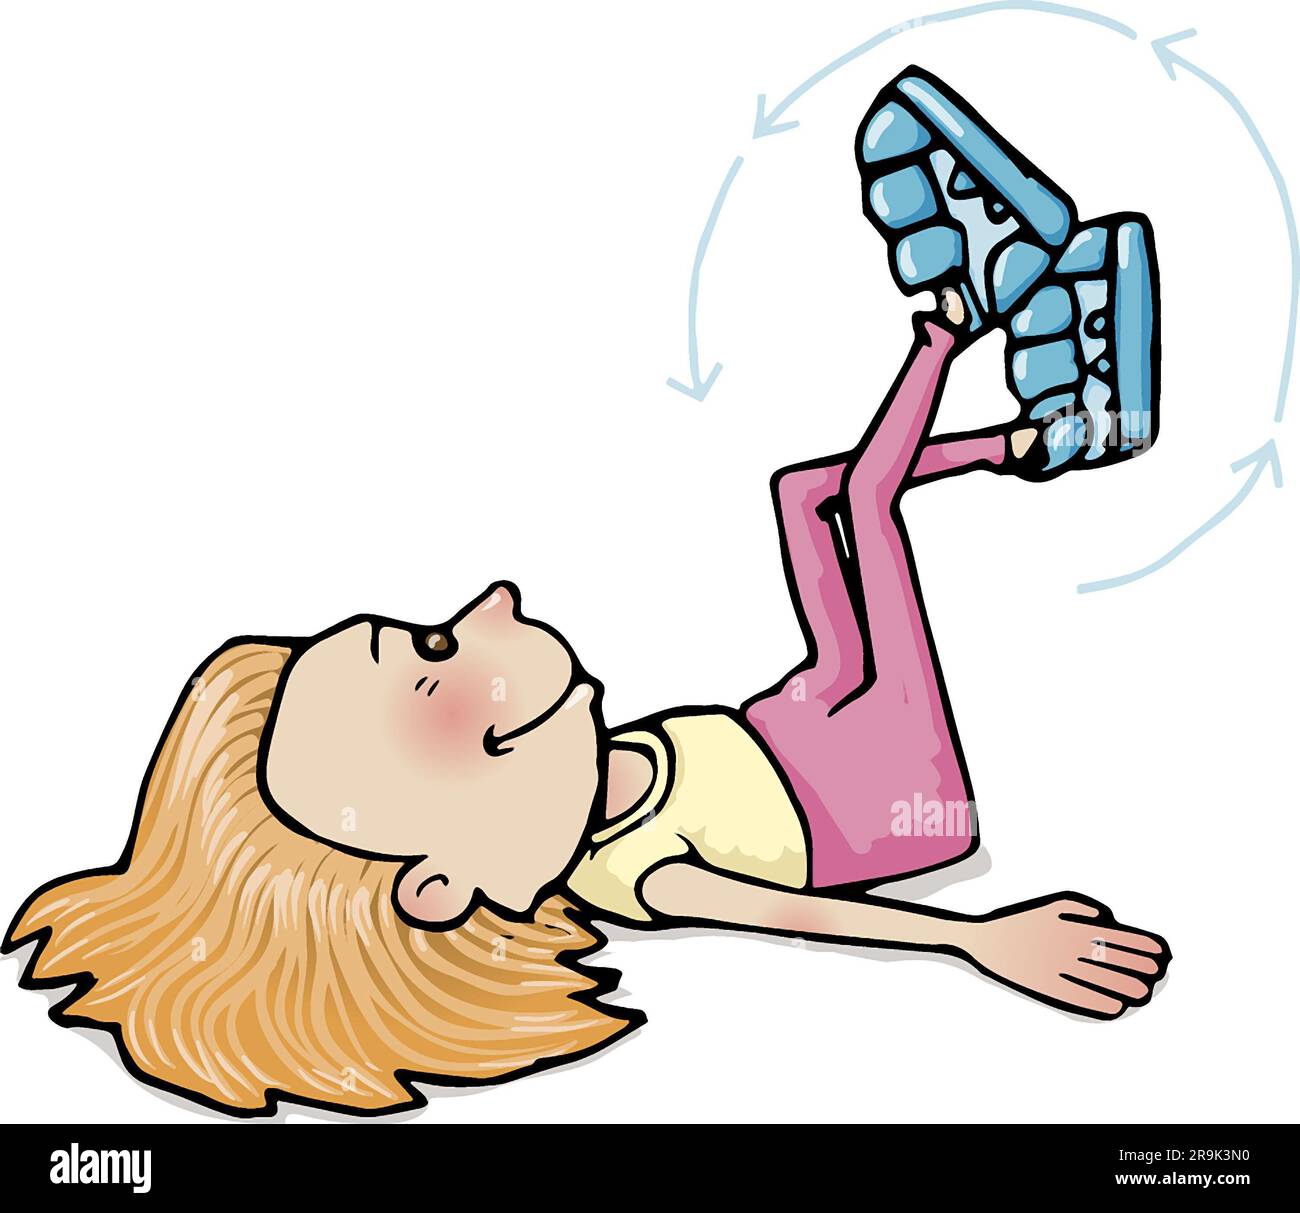 Pädagogische Kunst Illustration eines Mädchens im Alter von 5-7 Beinen in der Luft, Aircycling, Fitness, Gesundheit, Bewegung, Körperkontrolle, Koordination, Vorschulaktivitäten. Stockfoto